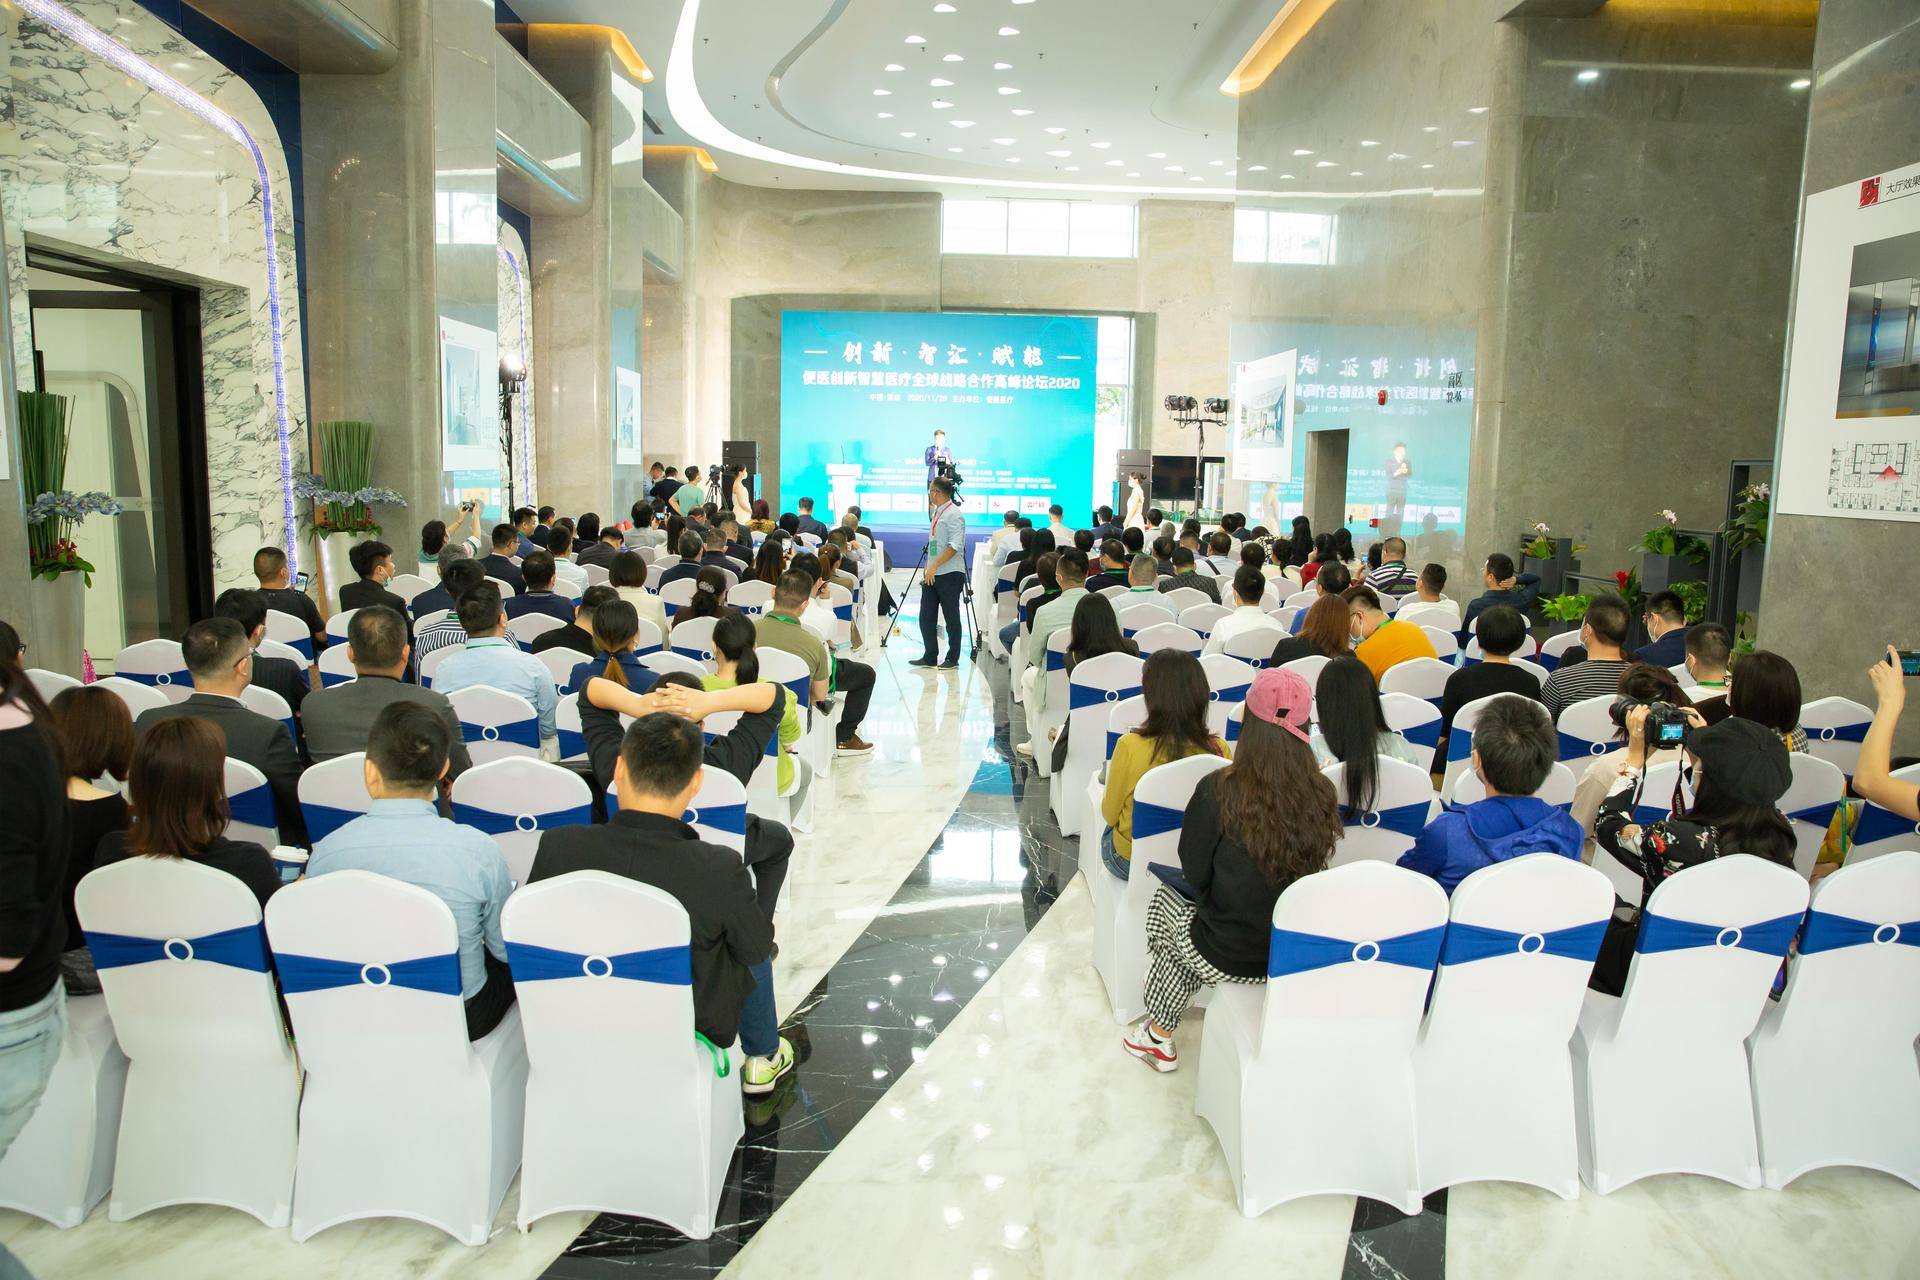 「便医创新智慧医疗全球战略合作高峰论坛」于深圳盛大召开